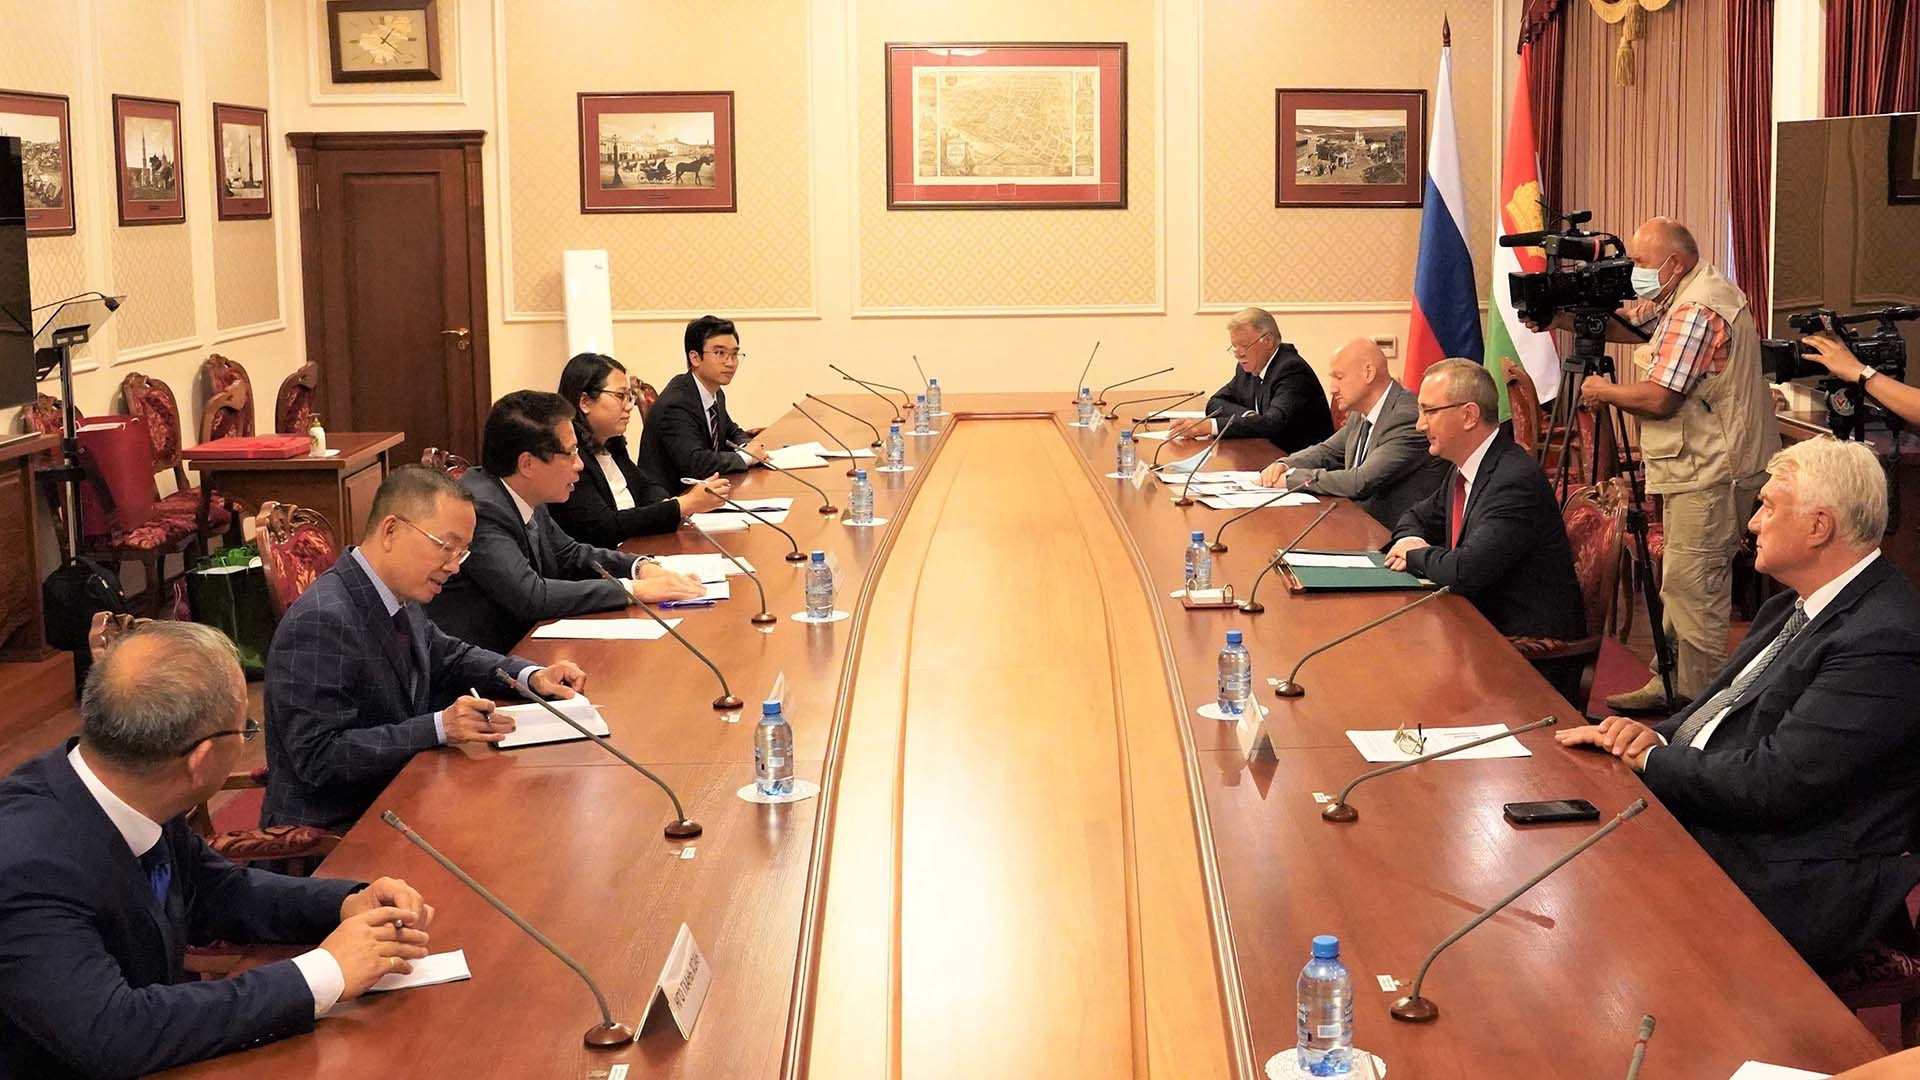 Đại sứ Đặng Minh Khôi làm việc tại tỉnh Kaluga, thúc đẩy hợp tác các địa phương Việt Nam-Nga